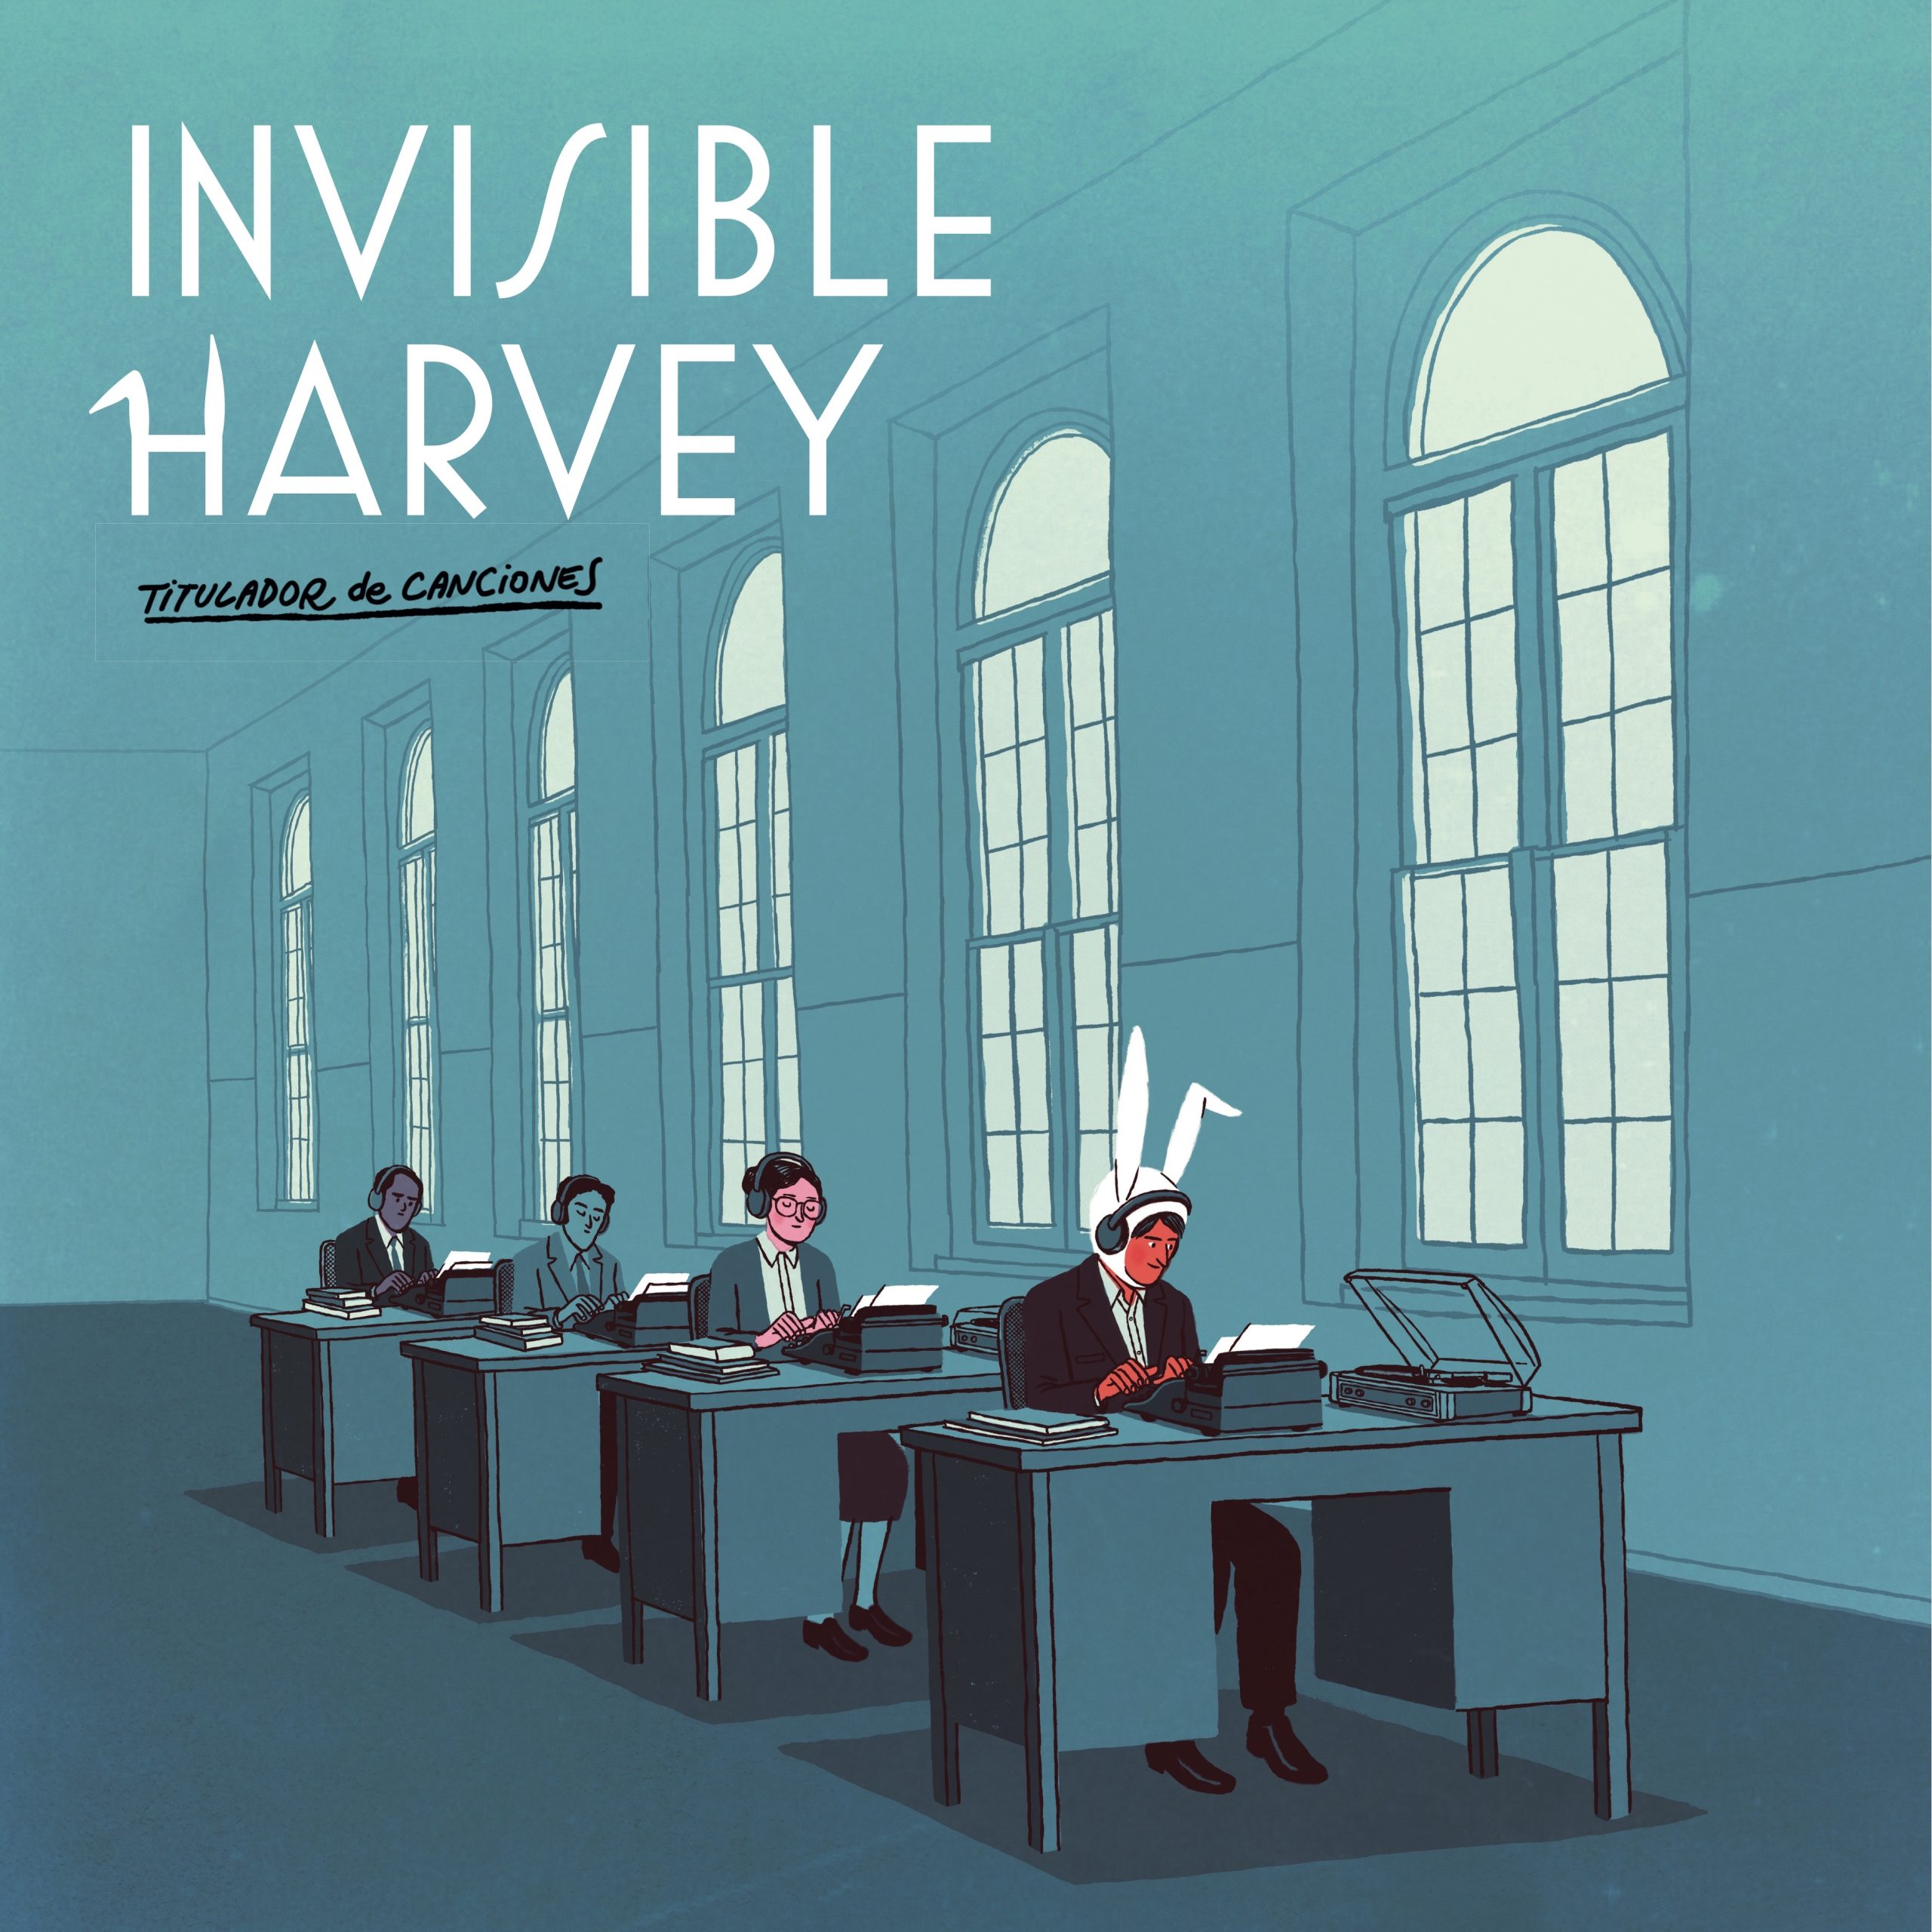 Invisible Harvey "Titulador de canciones" CD